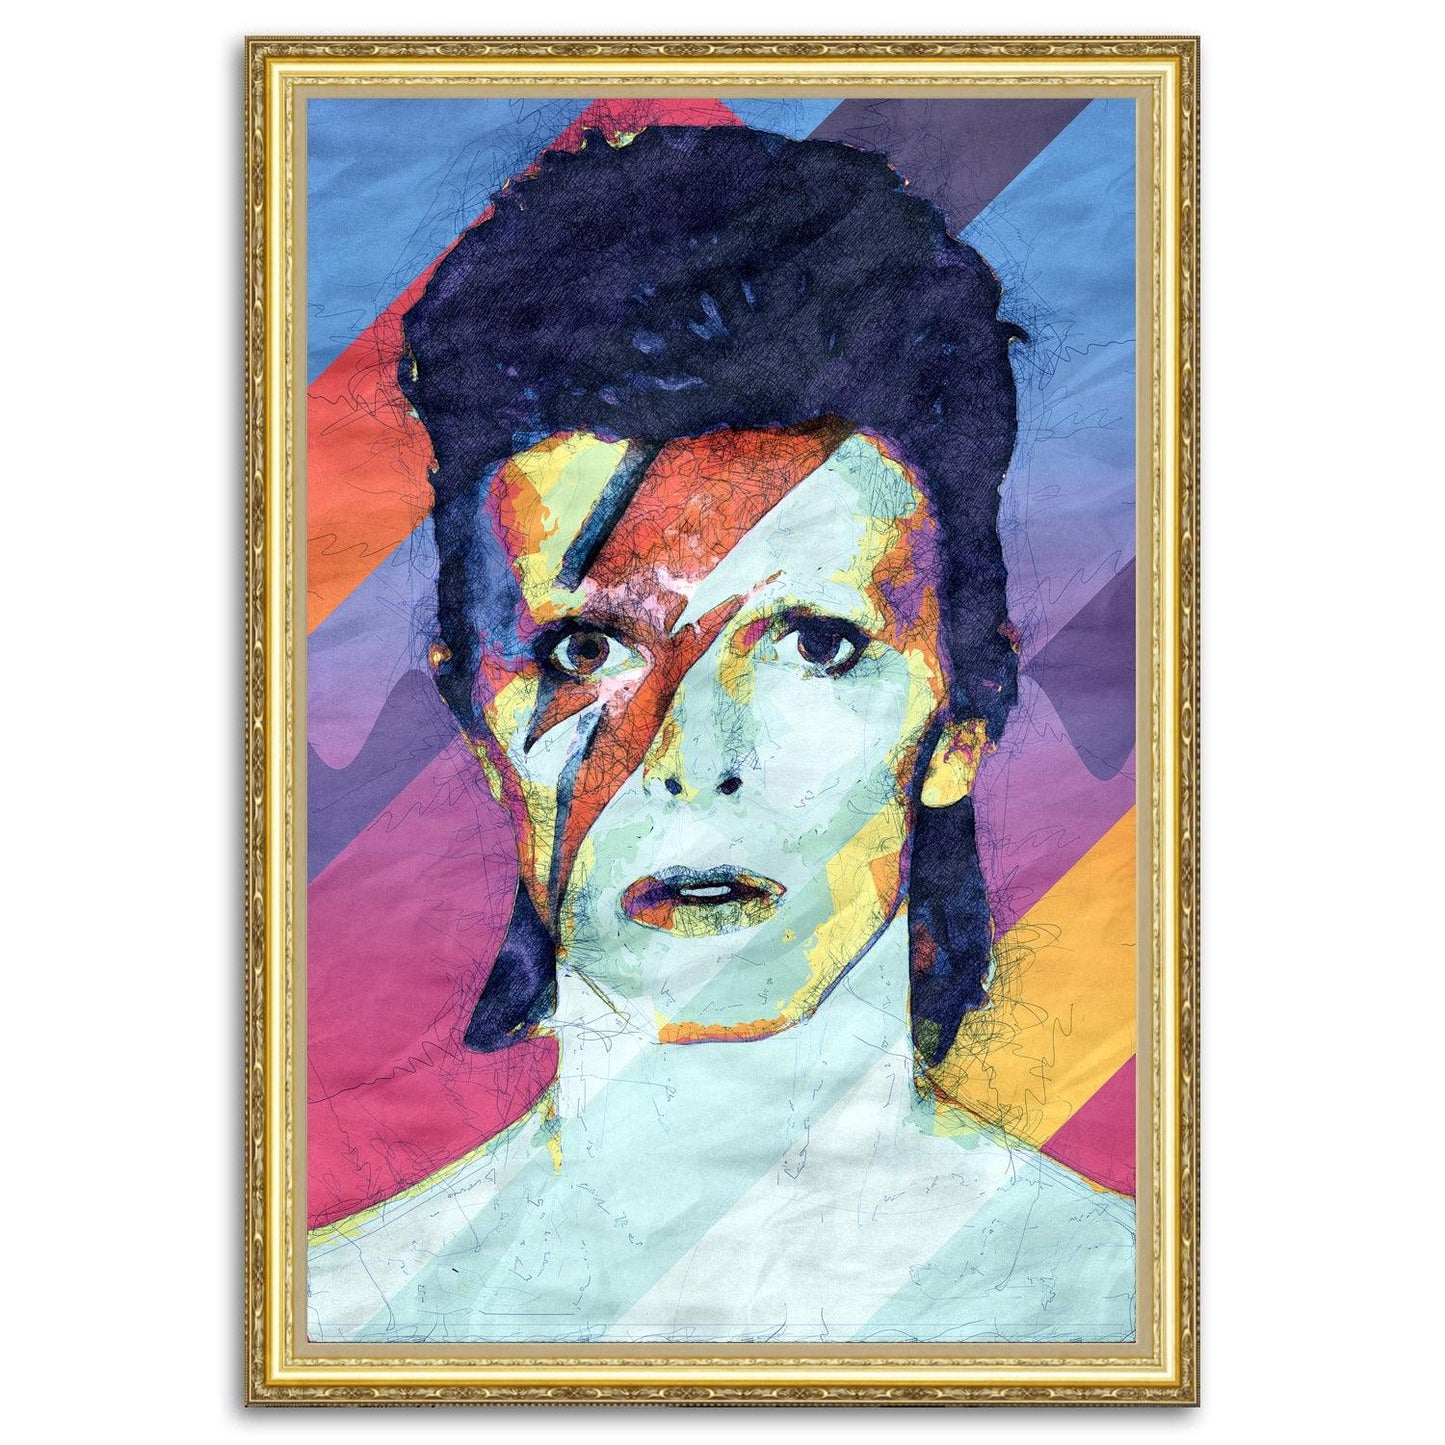 David Bowie Ziggy Stardust - Pop Art Modern Poster - ArtCursor